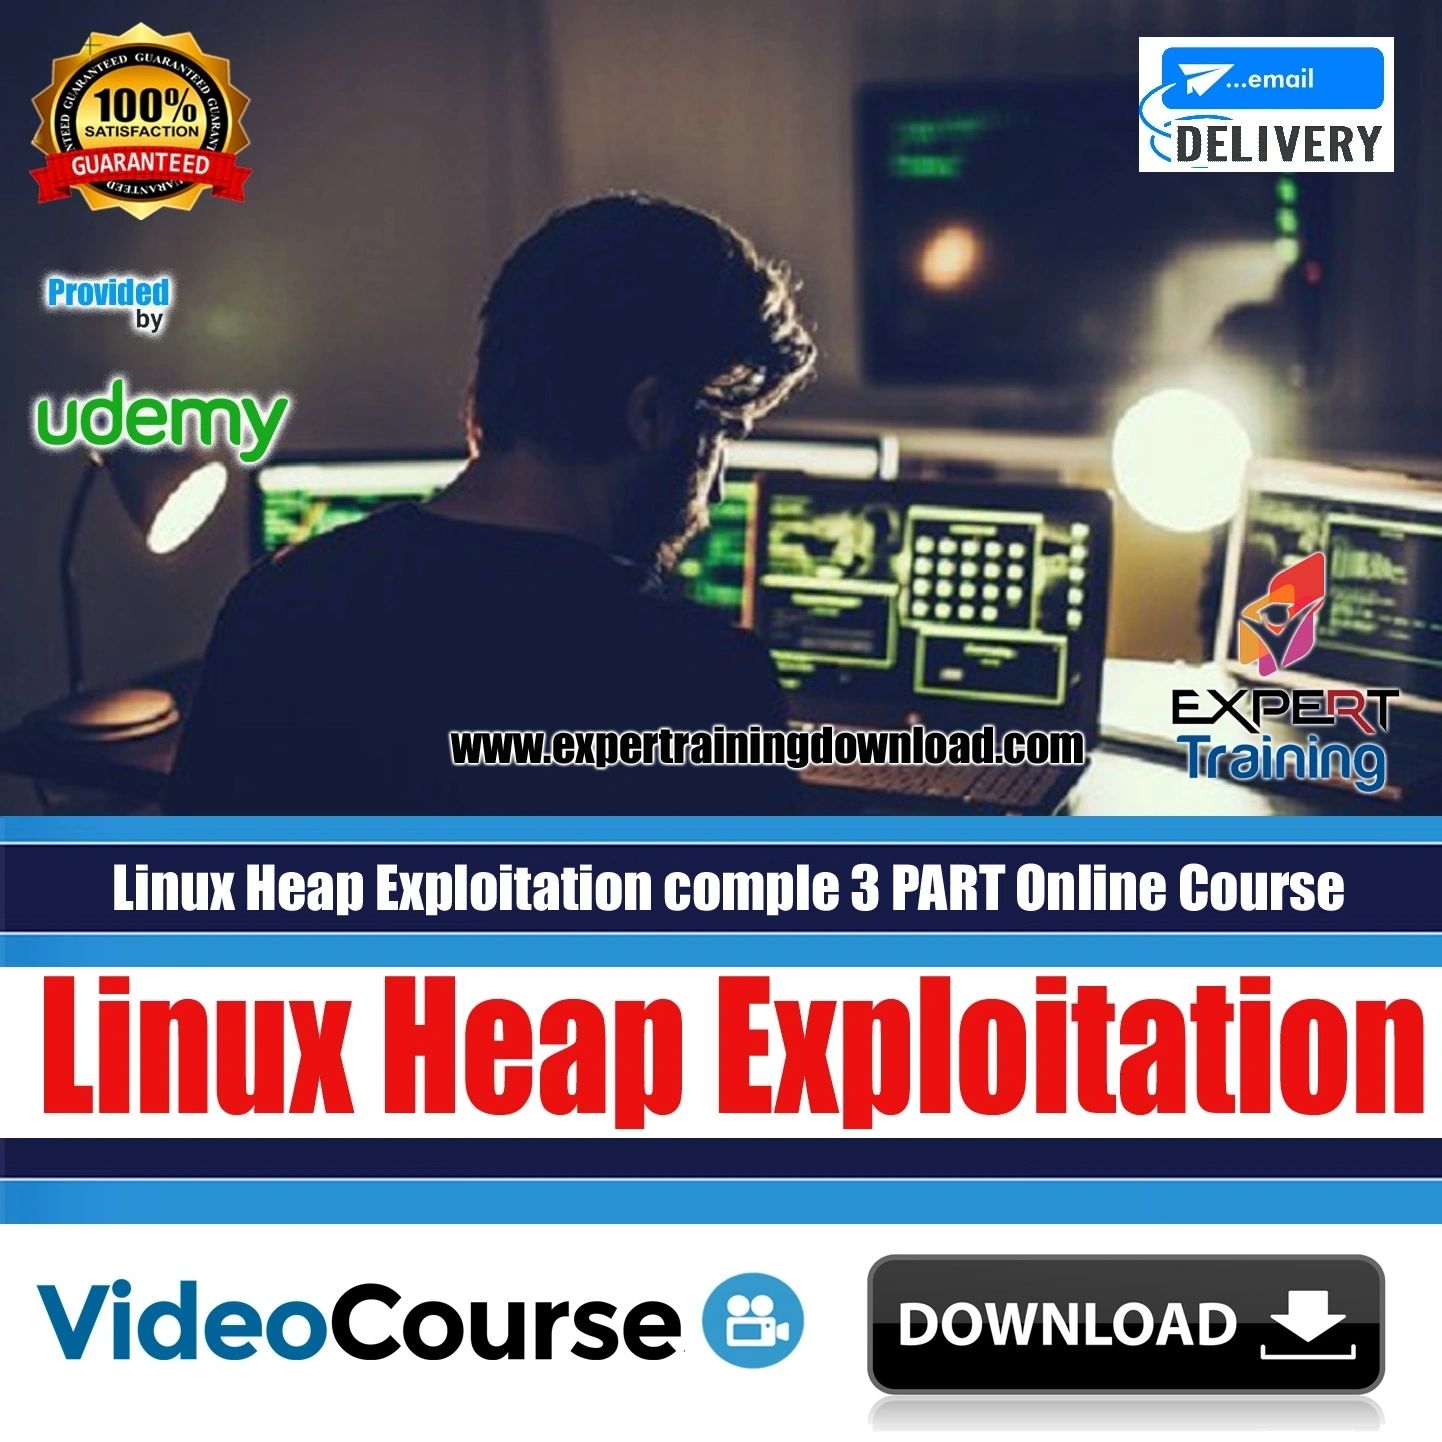 Linux Heap Exploitation Complete 3 PART Online Course